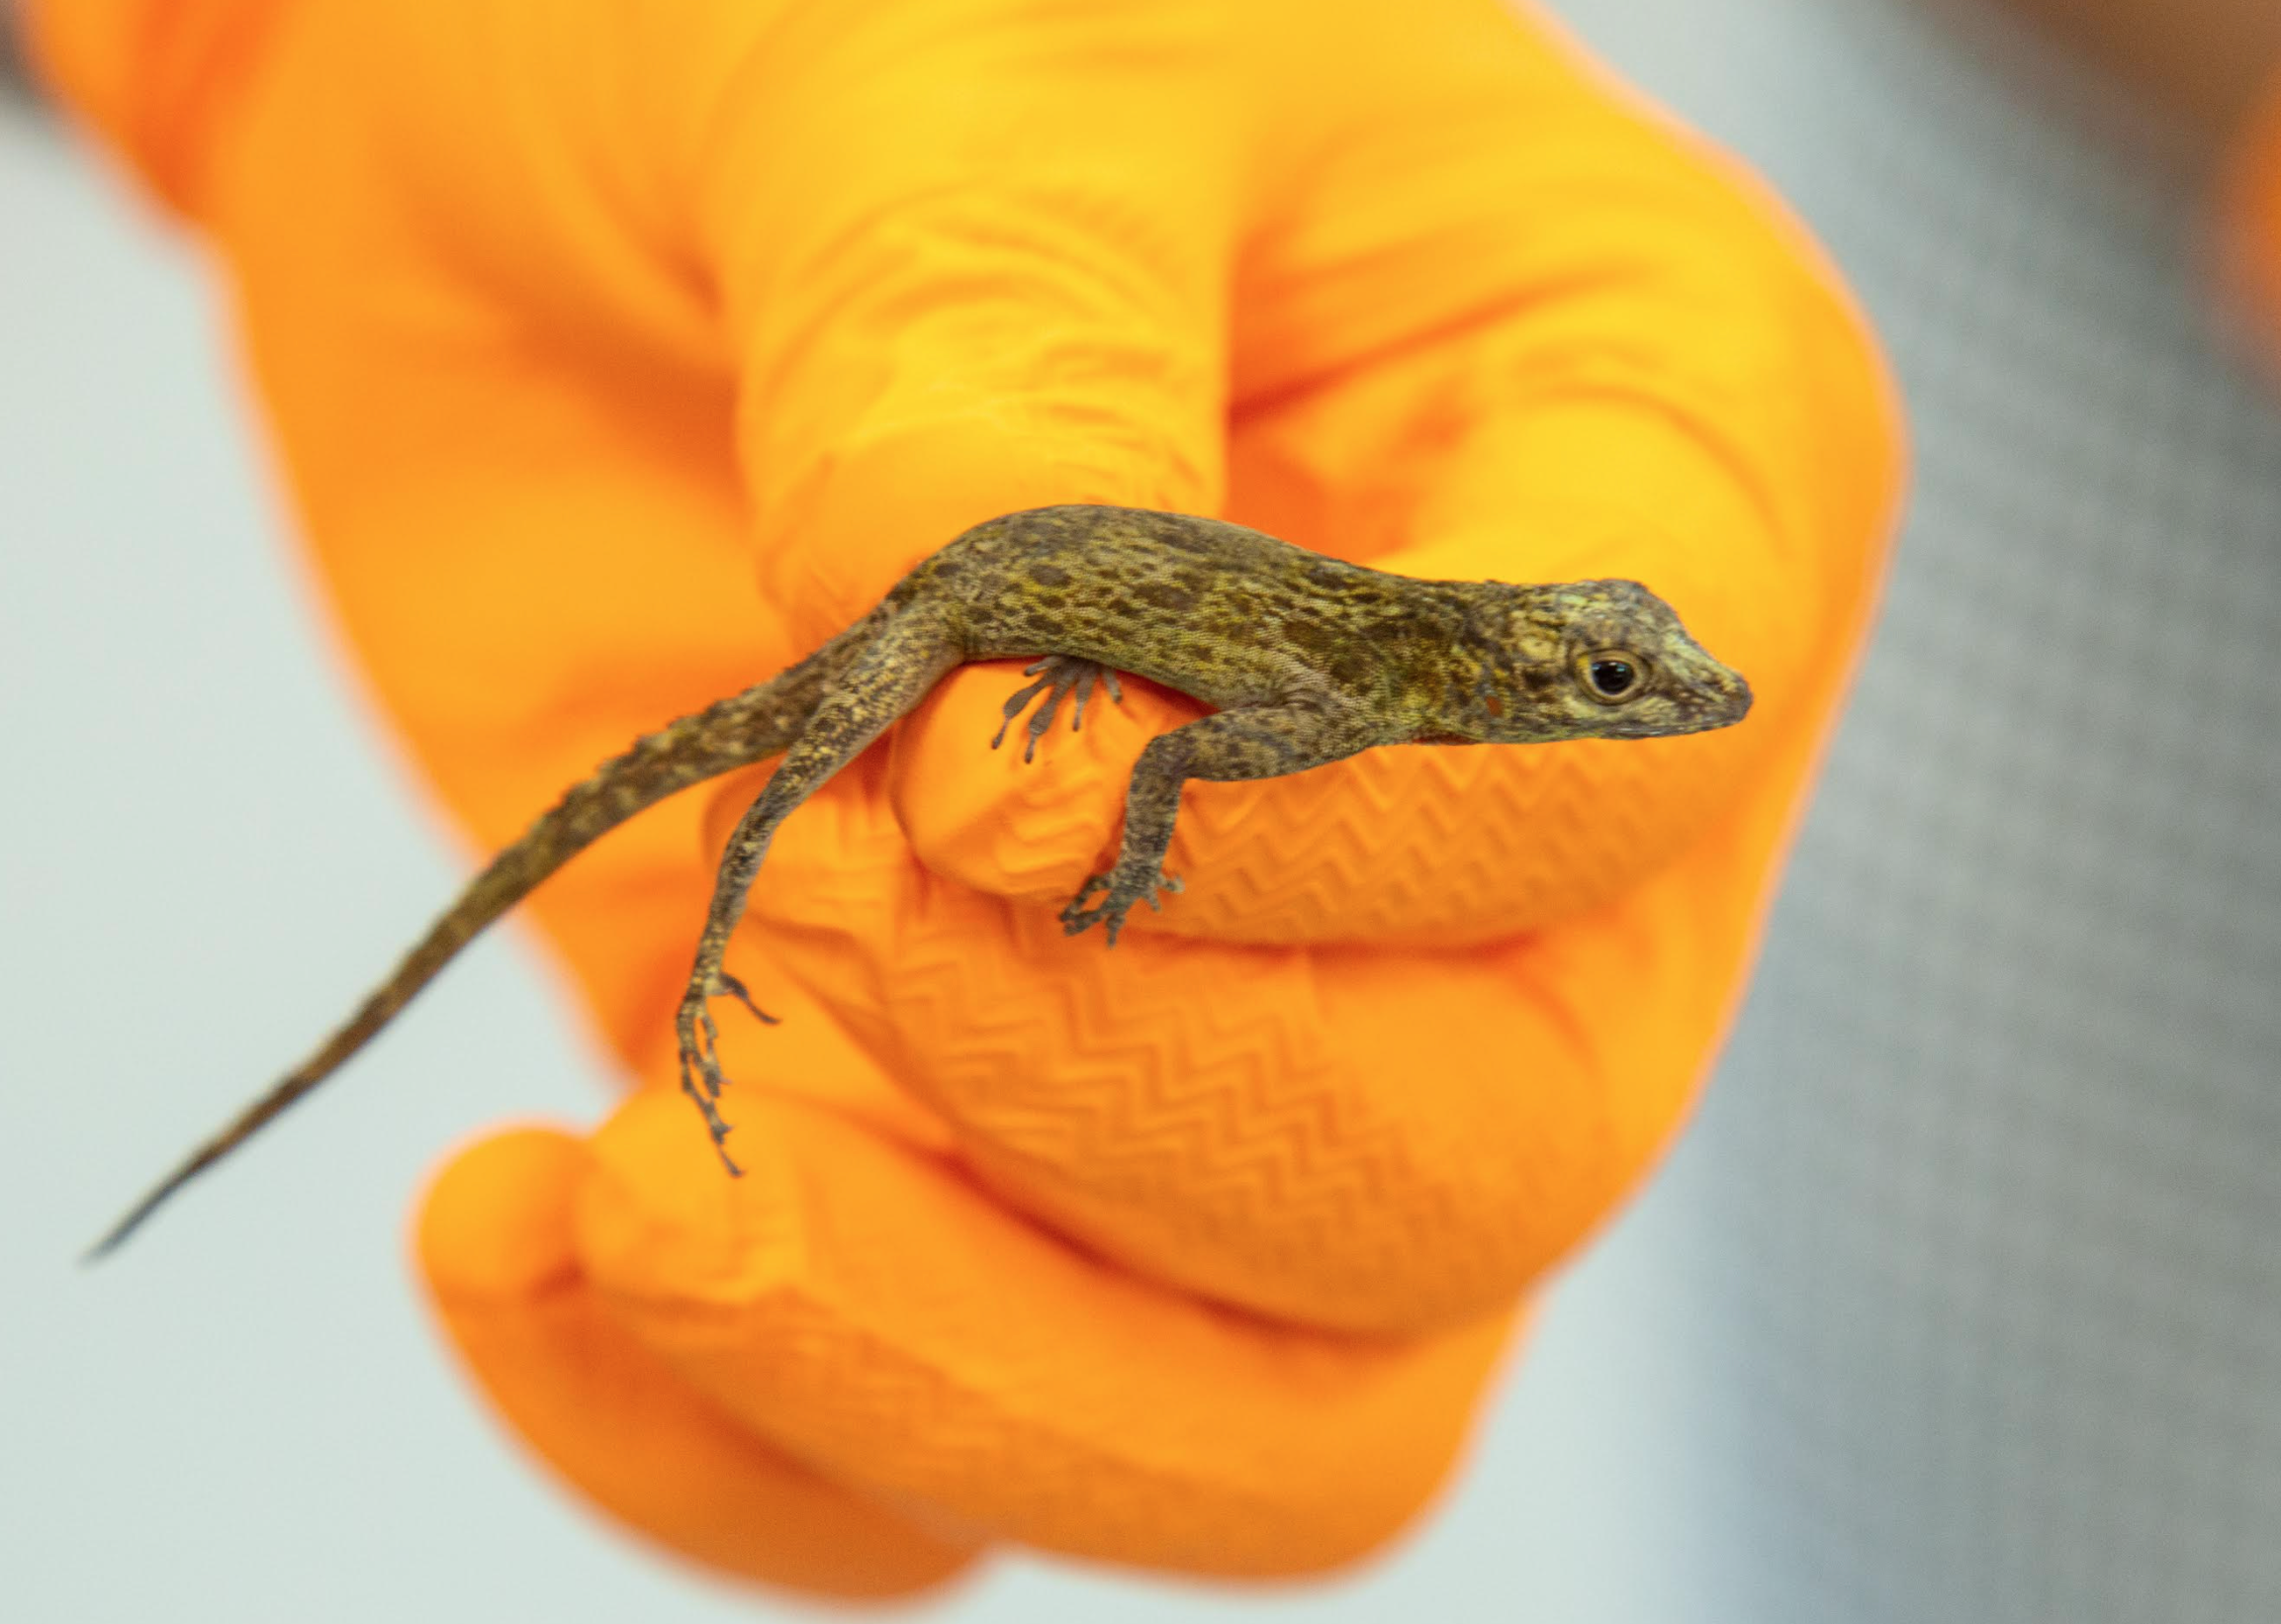 Barrick capacita a estudiantes y profesionales en técnicas de conservación de reptiles y anfibios